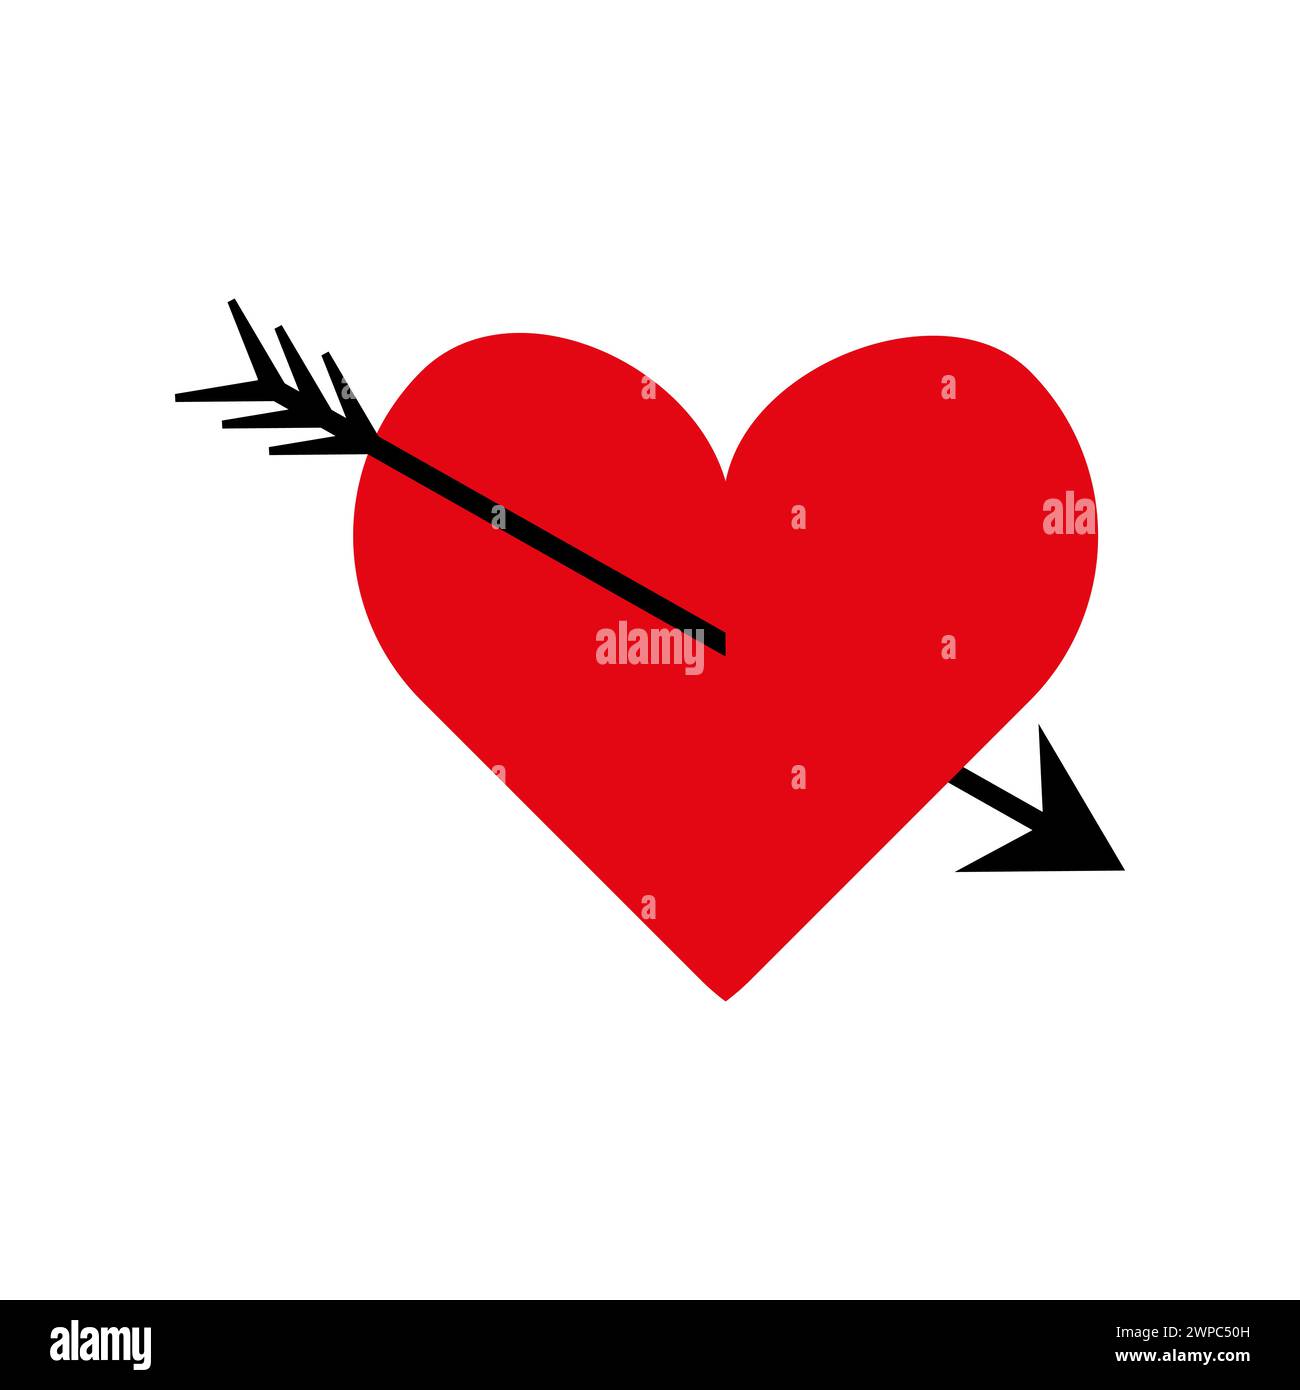 Ein kräftiges rotes Herz, durchbohrt von einem schwarzen Pfeil. Durchstochenes rotes Herz. Symbol „Cupid Pfeil“. Symbol für Liebe und Romantik. Vektorabbildung. EPS 10. Stock Vektor